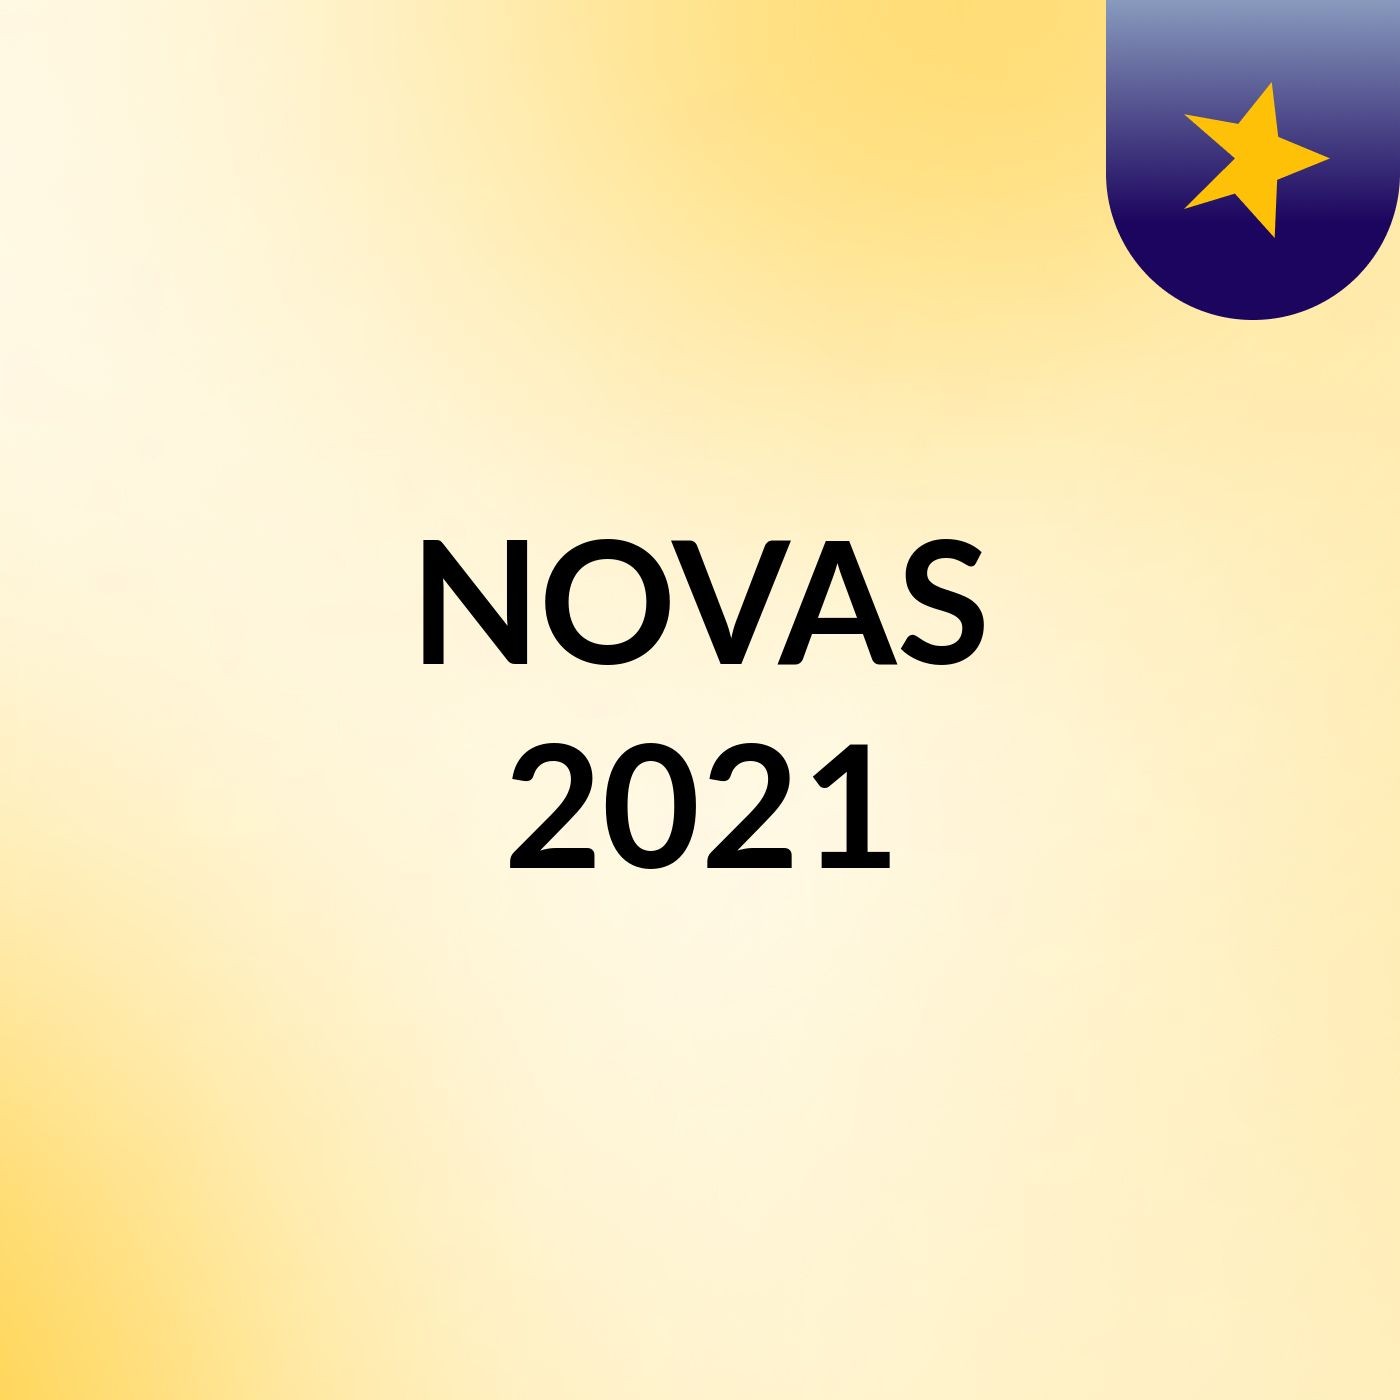 NOVAS 2021